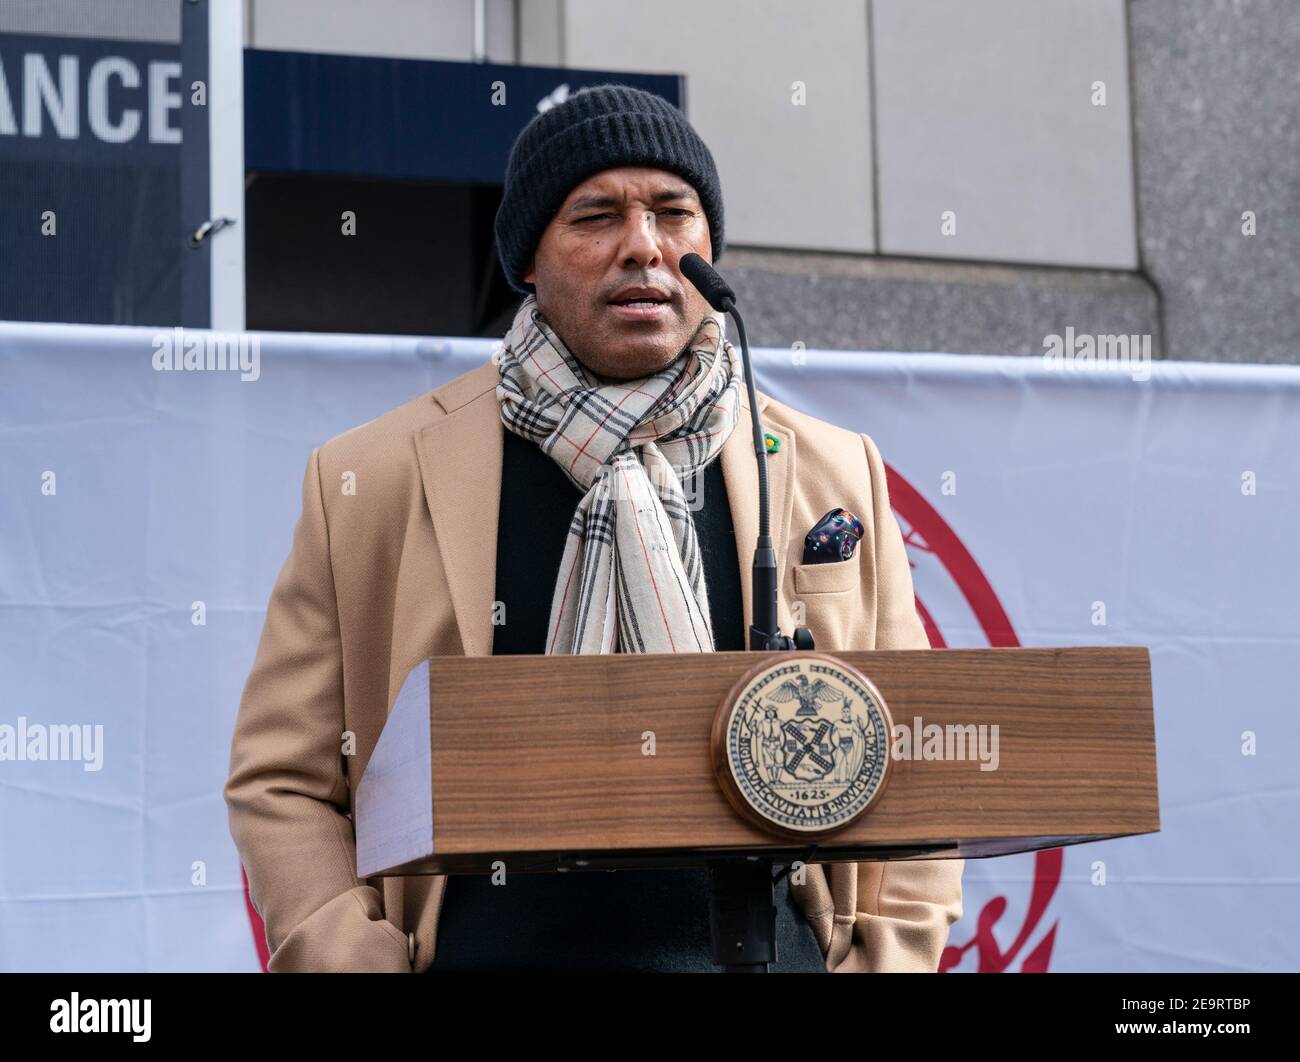 New York, NY - le 5 février 2021 : Mariano Rivera s'exprime à l'ouverture du site de vaccination de masse au Yankee Stadium avec le logo de l'équipe de baseball des Yankees en toile de fond Banque D'Images